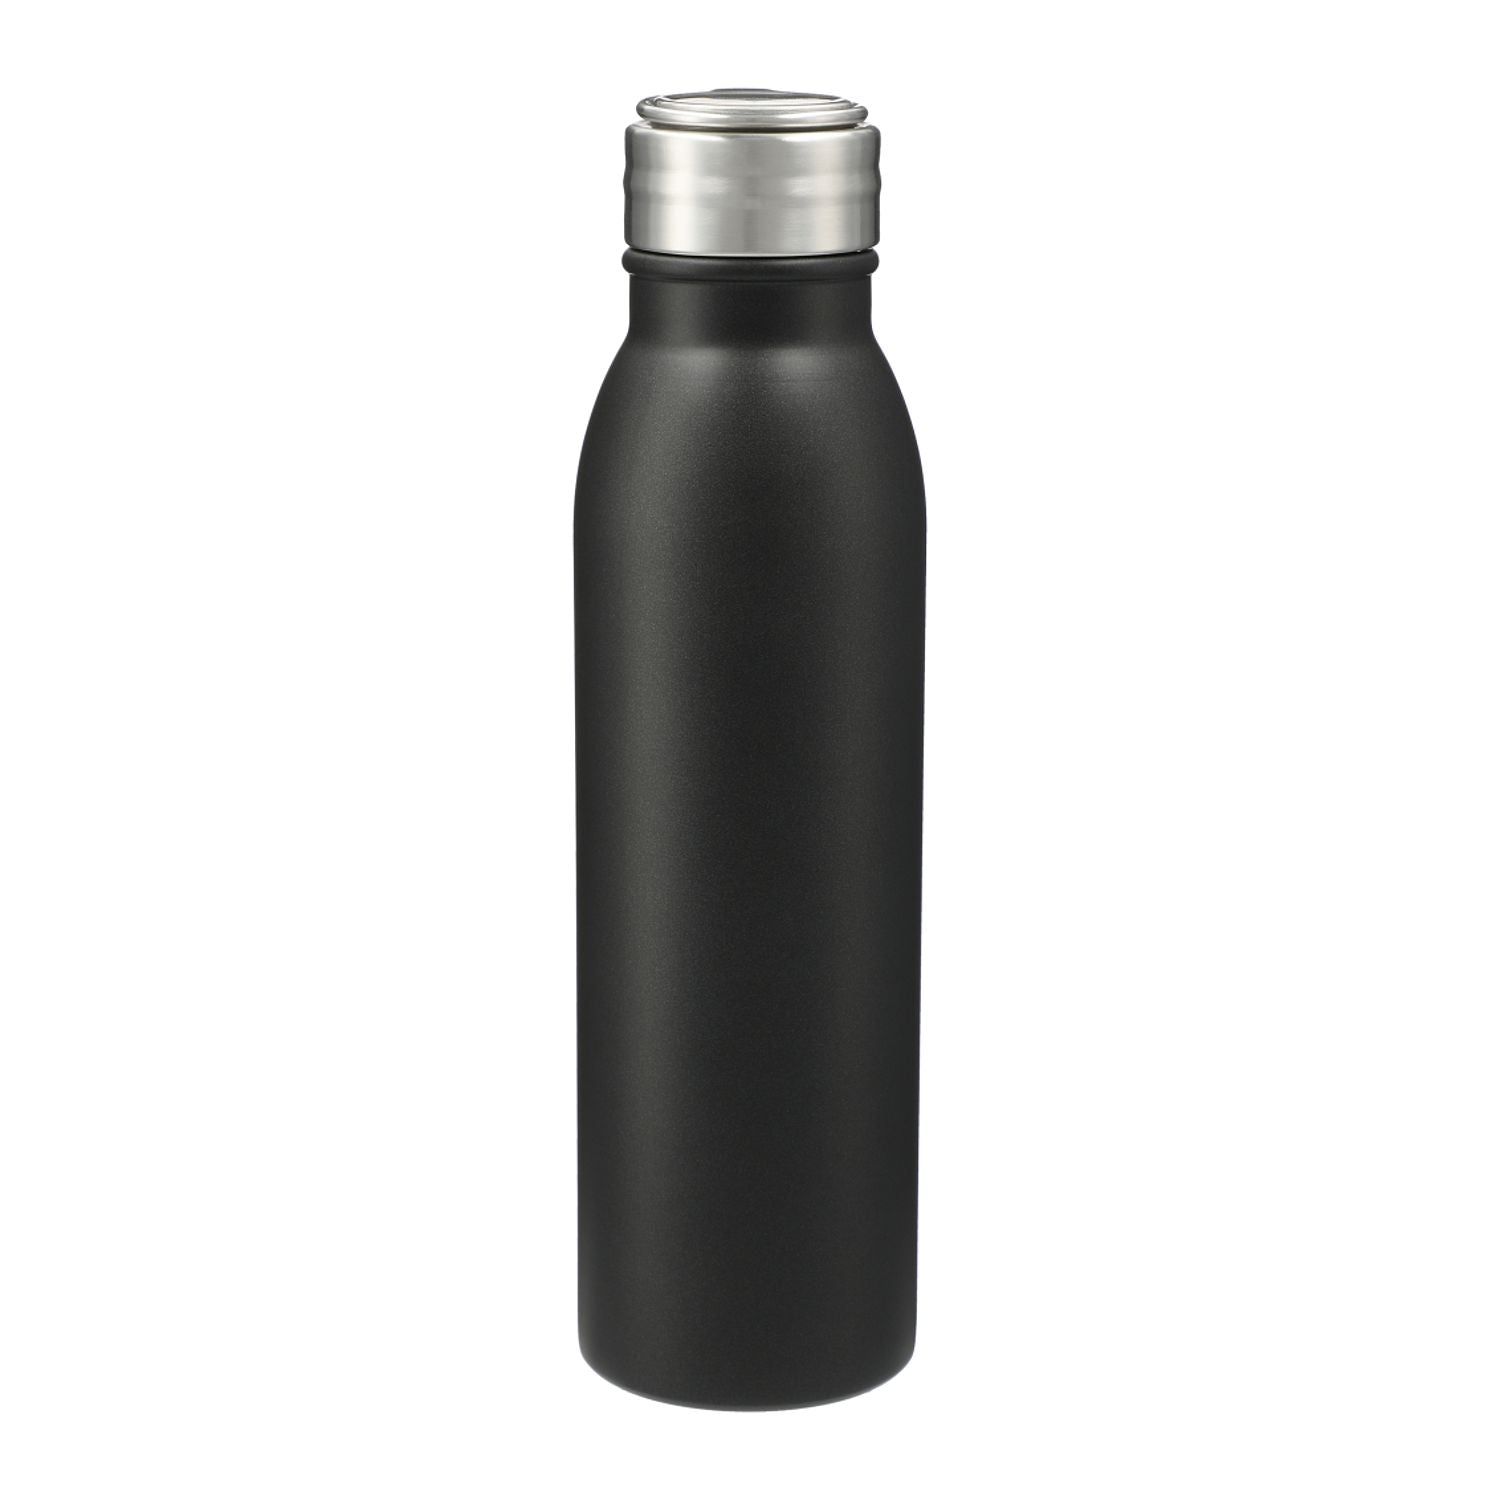 Vida 24oz Stainless Steel Single-Walled Bottle in black